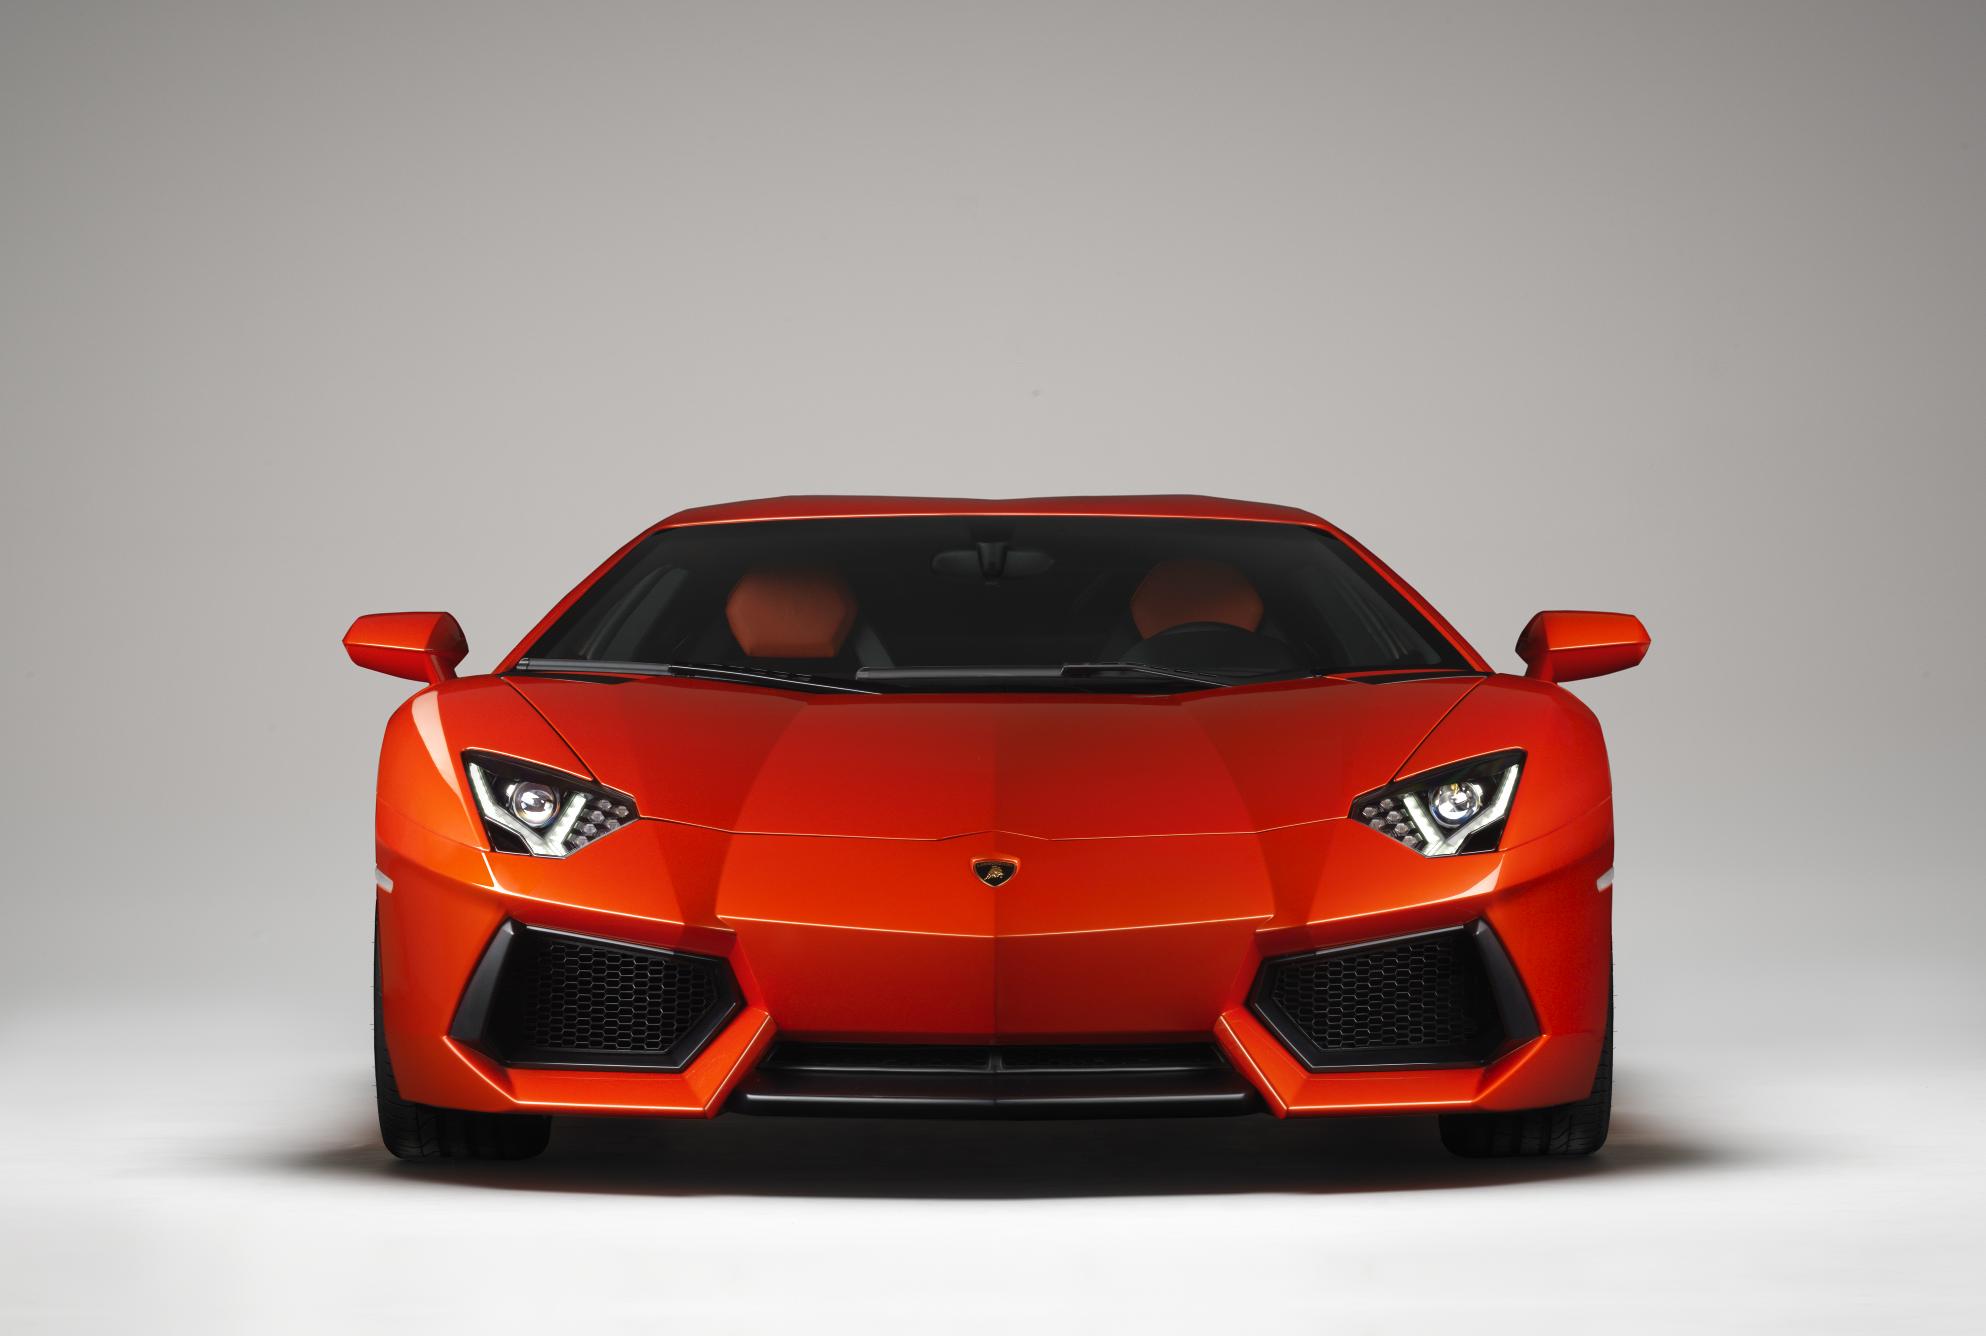 Front of Orange Lamborghini